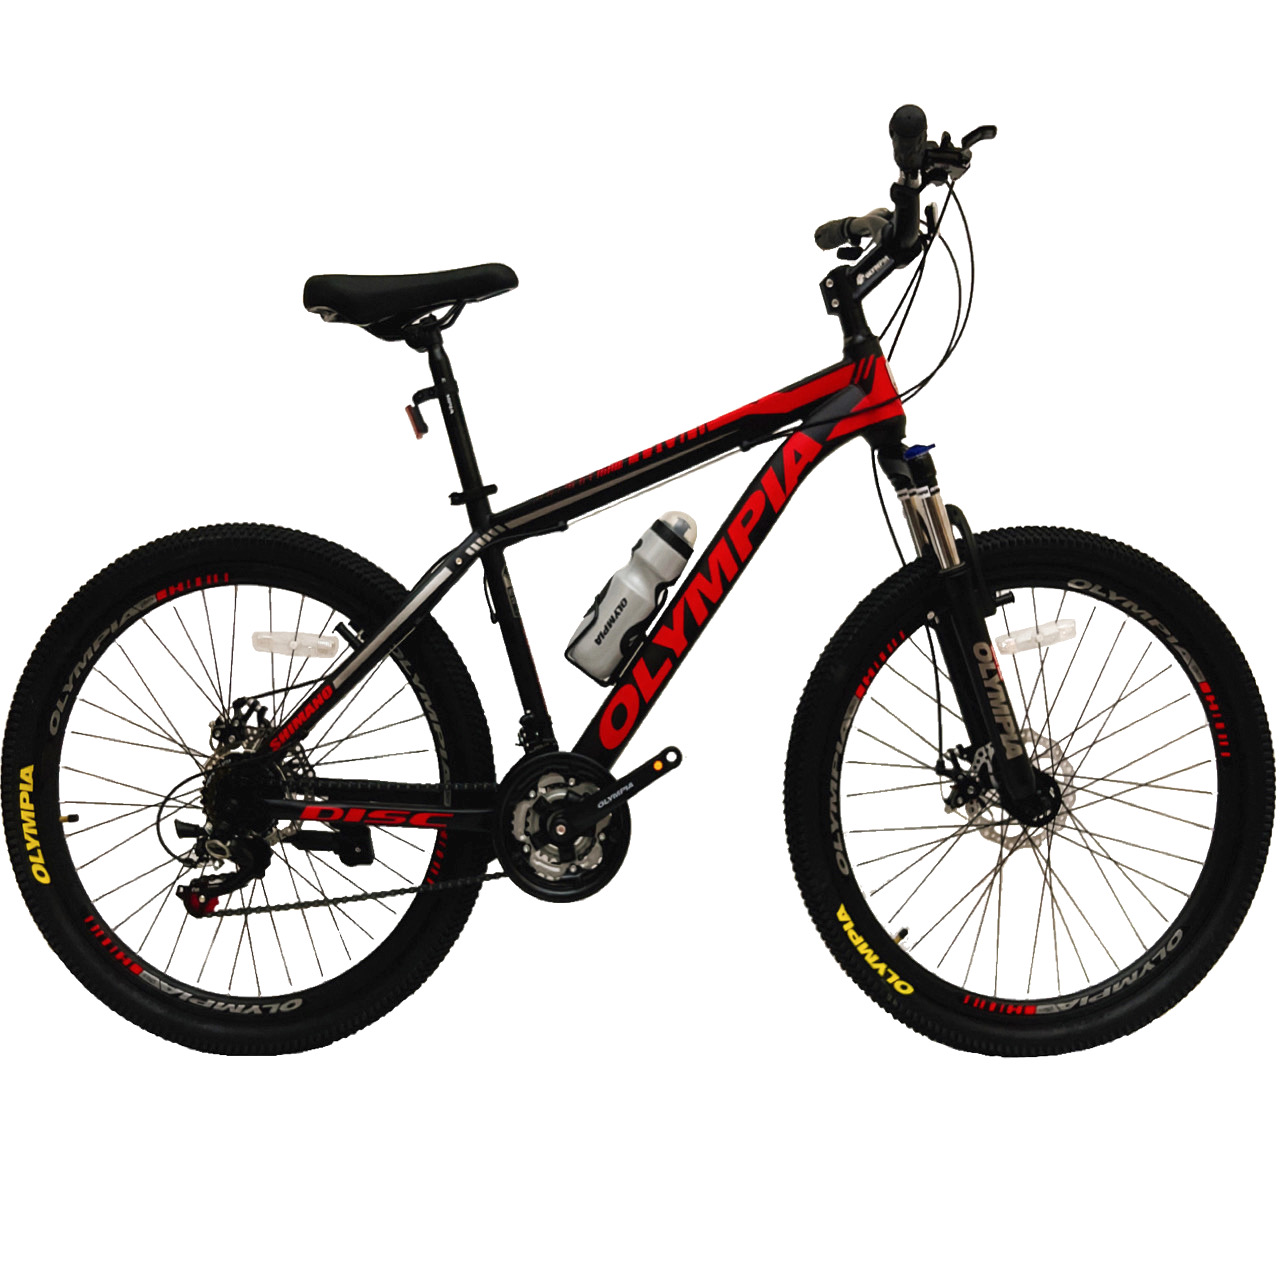 نکته خرید - قیمت روز دوچرخه کوهستان المپیا مدل NEW GEELY-DISC سایز 26 خرید